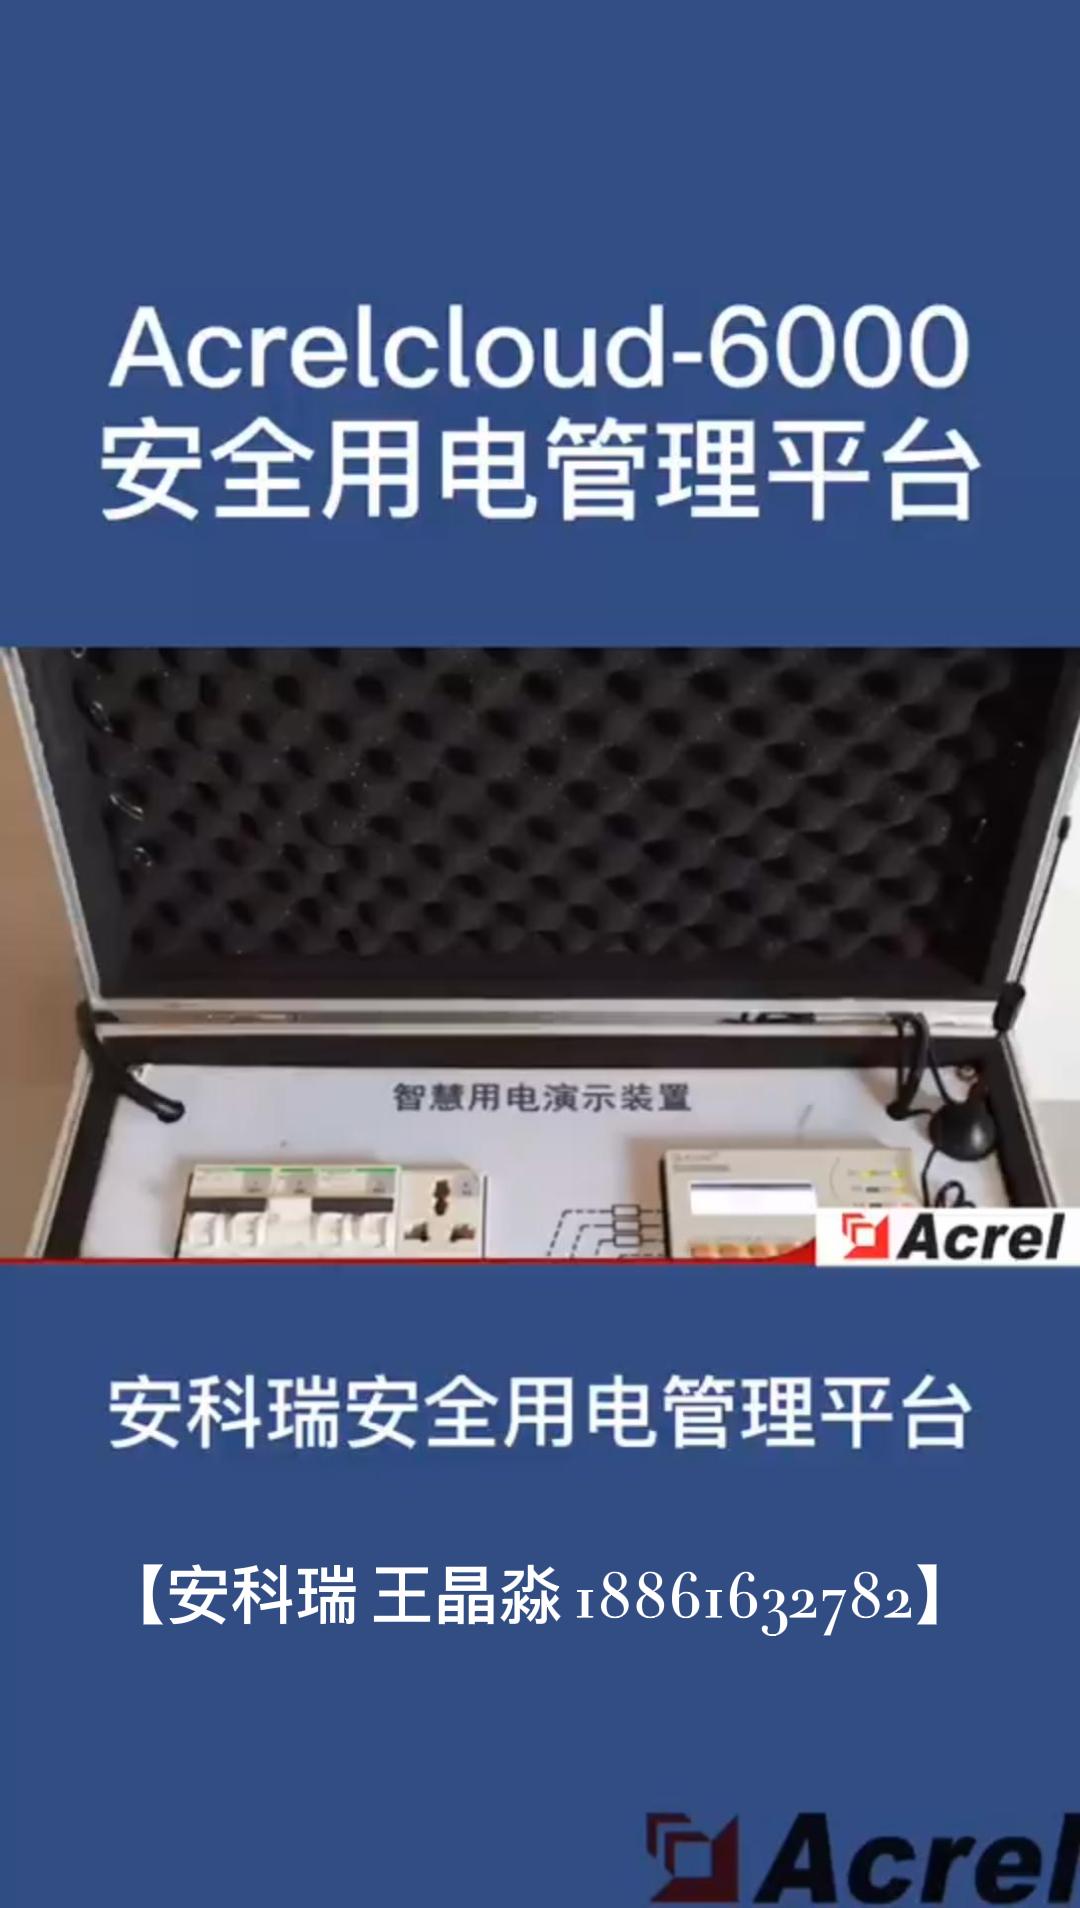 安科瑞Acrelcloud-6000安全用電管理平臺-智慧用電演示箱
 #產品方案 